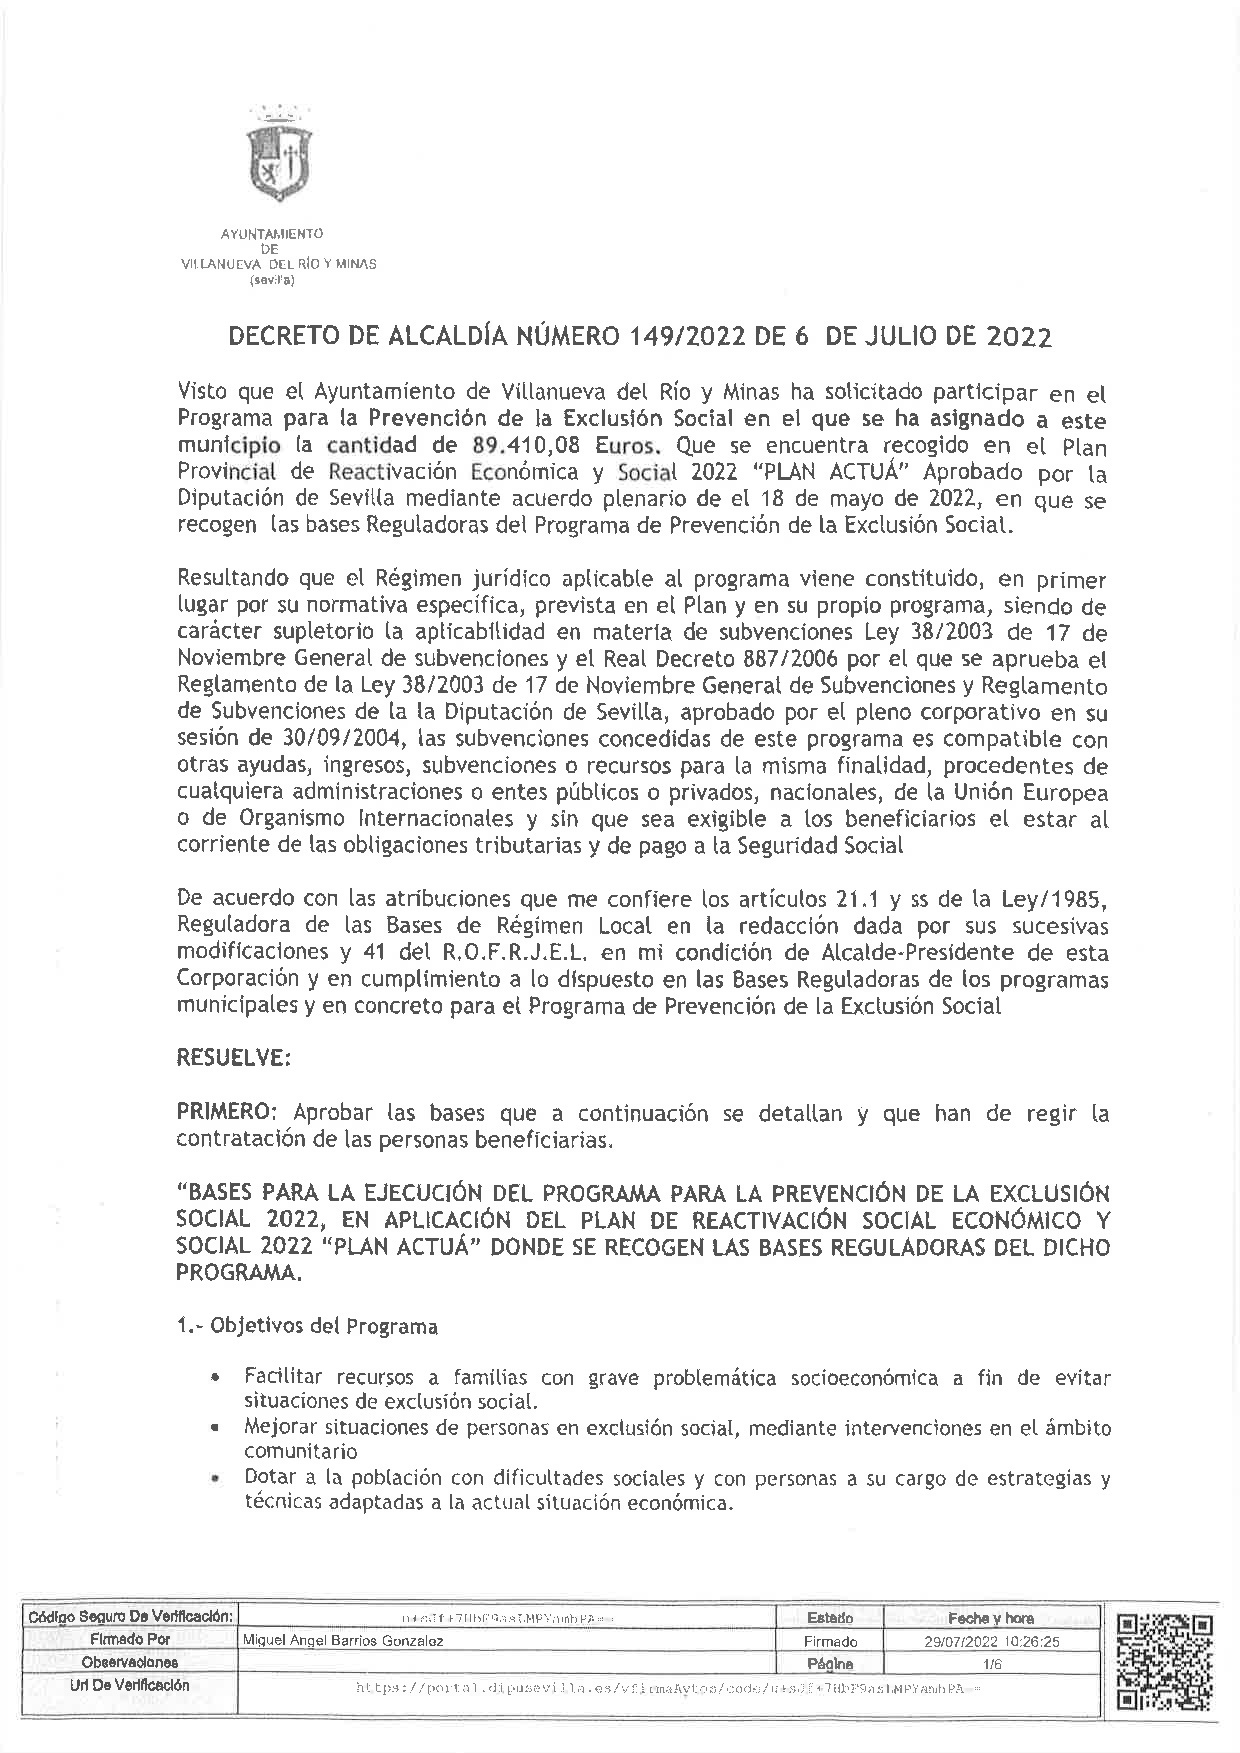 DECRETO DE ALCALDIA Nº 149. BASES PROGRAMA PREVENCION DE LA EXCLUSION SOCIAL, DEL PLAN ACTUA-001